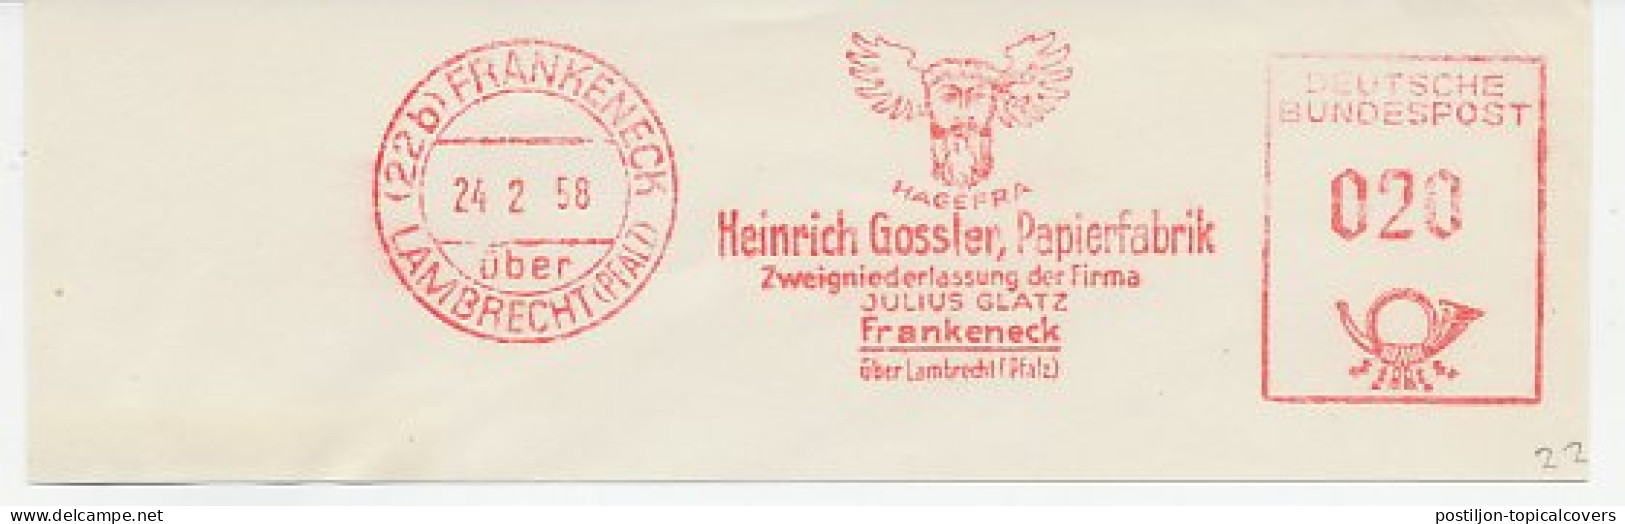 Meter Cut Germany 1958 Head - Wings - Paperfactory - Mythologie